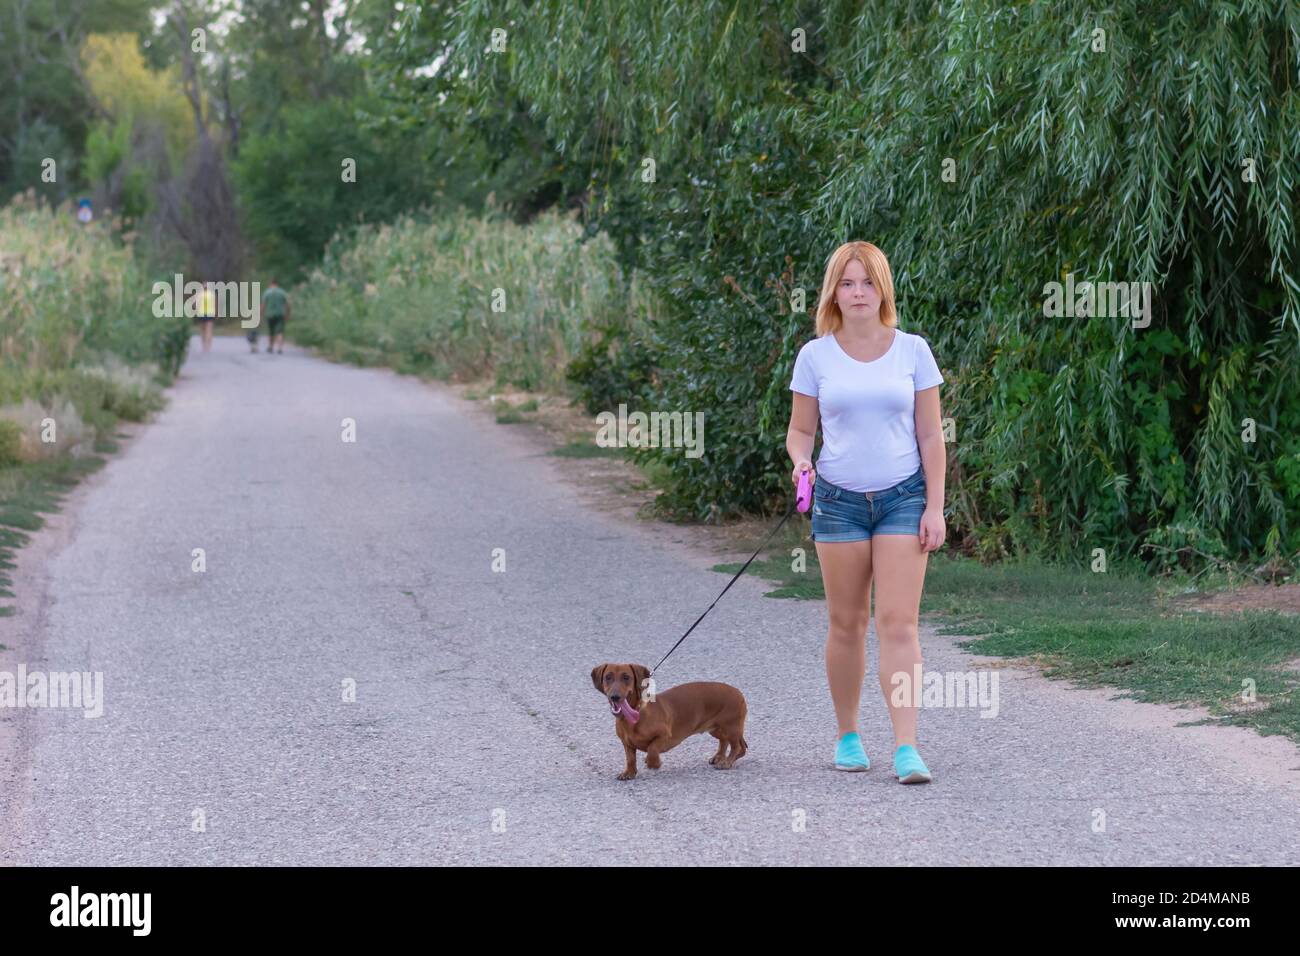 Eine junge blonde Frau in einem weißen T-Shirt und Shorts spaziert mit einem braunen Dackel im Park. Wandern mit dem Hund im Sommer im Freien. Stockfoto